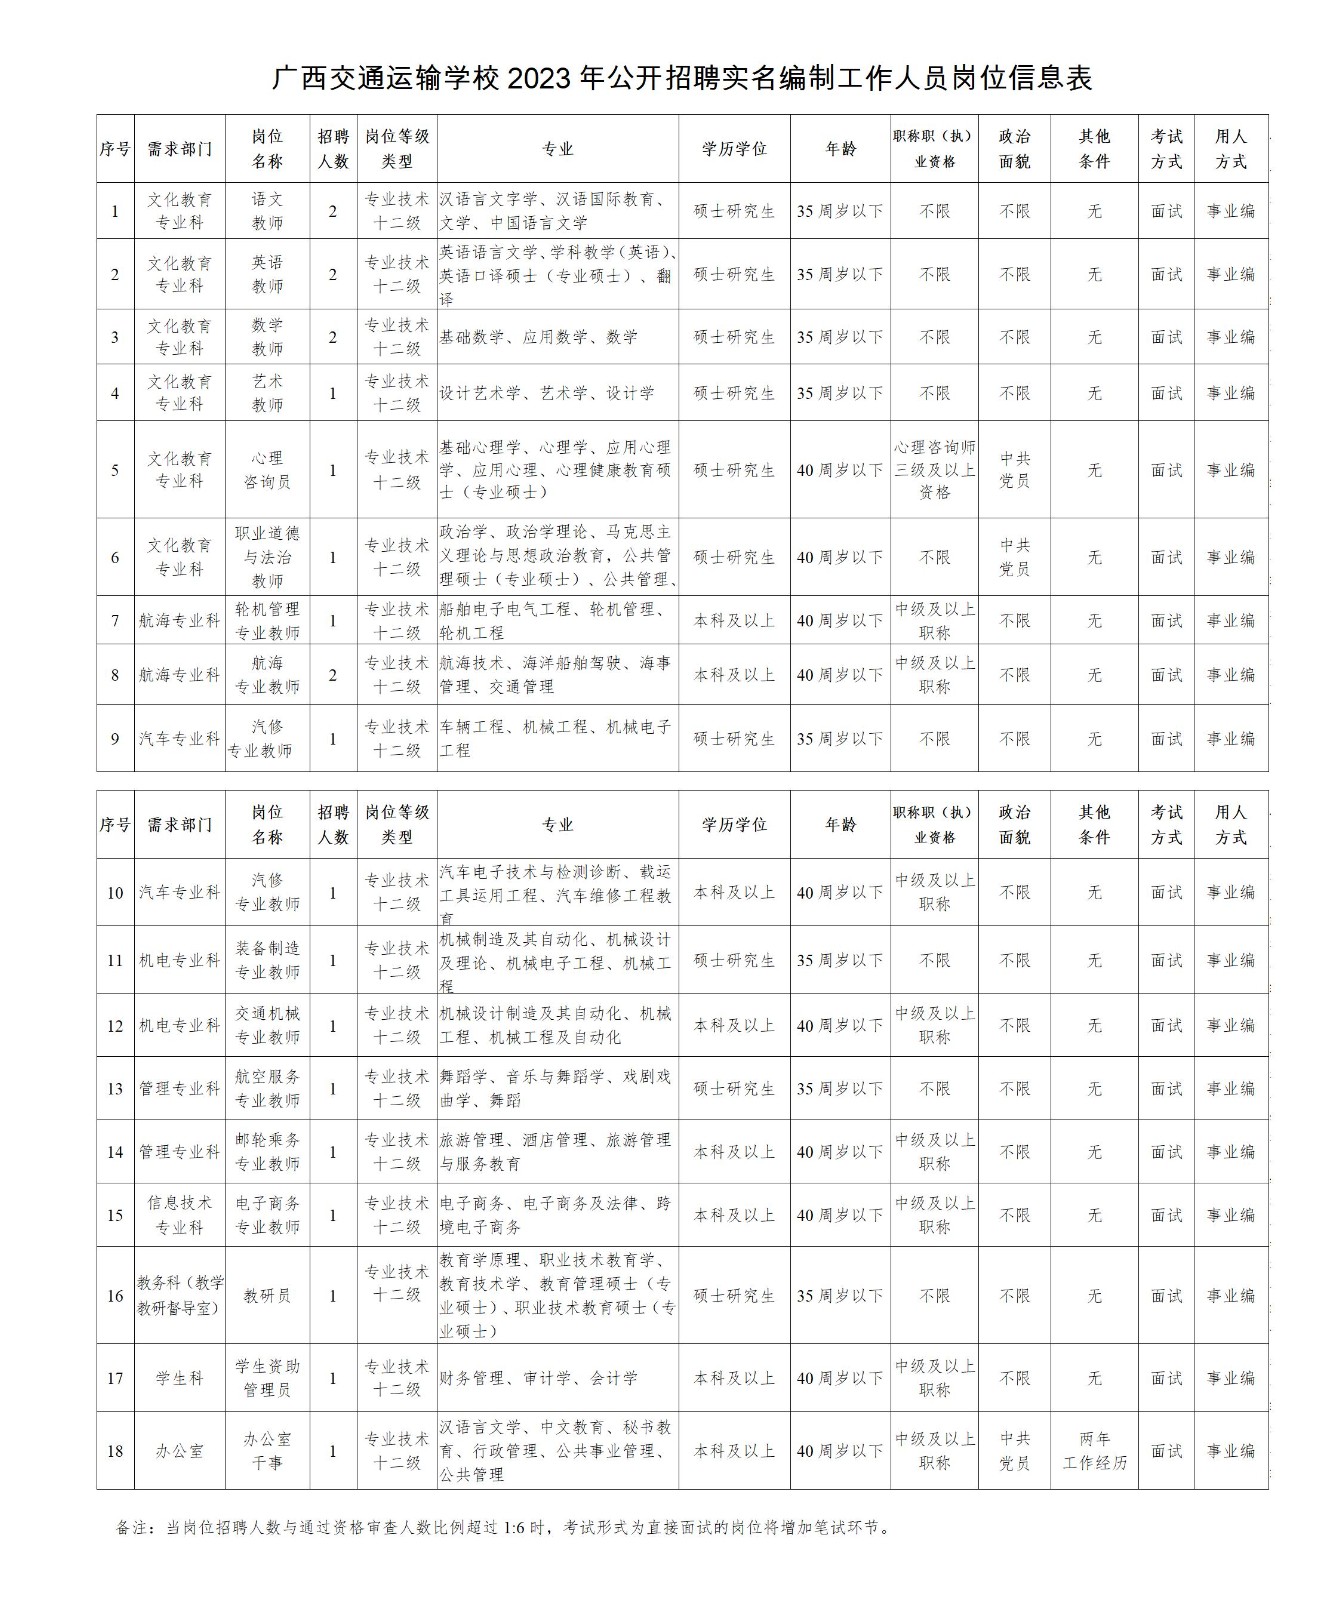 附件1.广西交通运输学校2023年度公开招聘工作人员岗位信息表_01.jpg